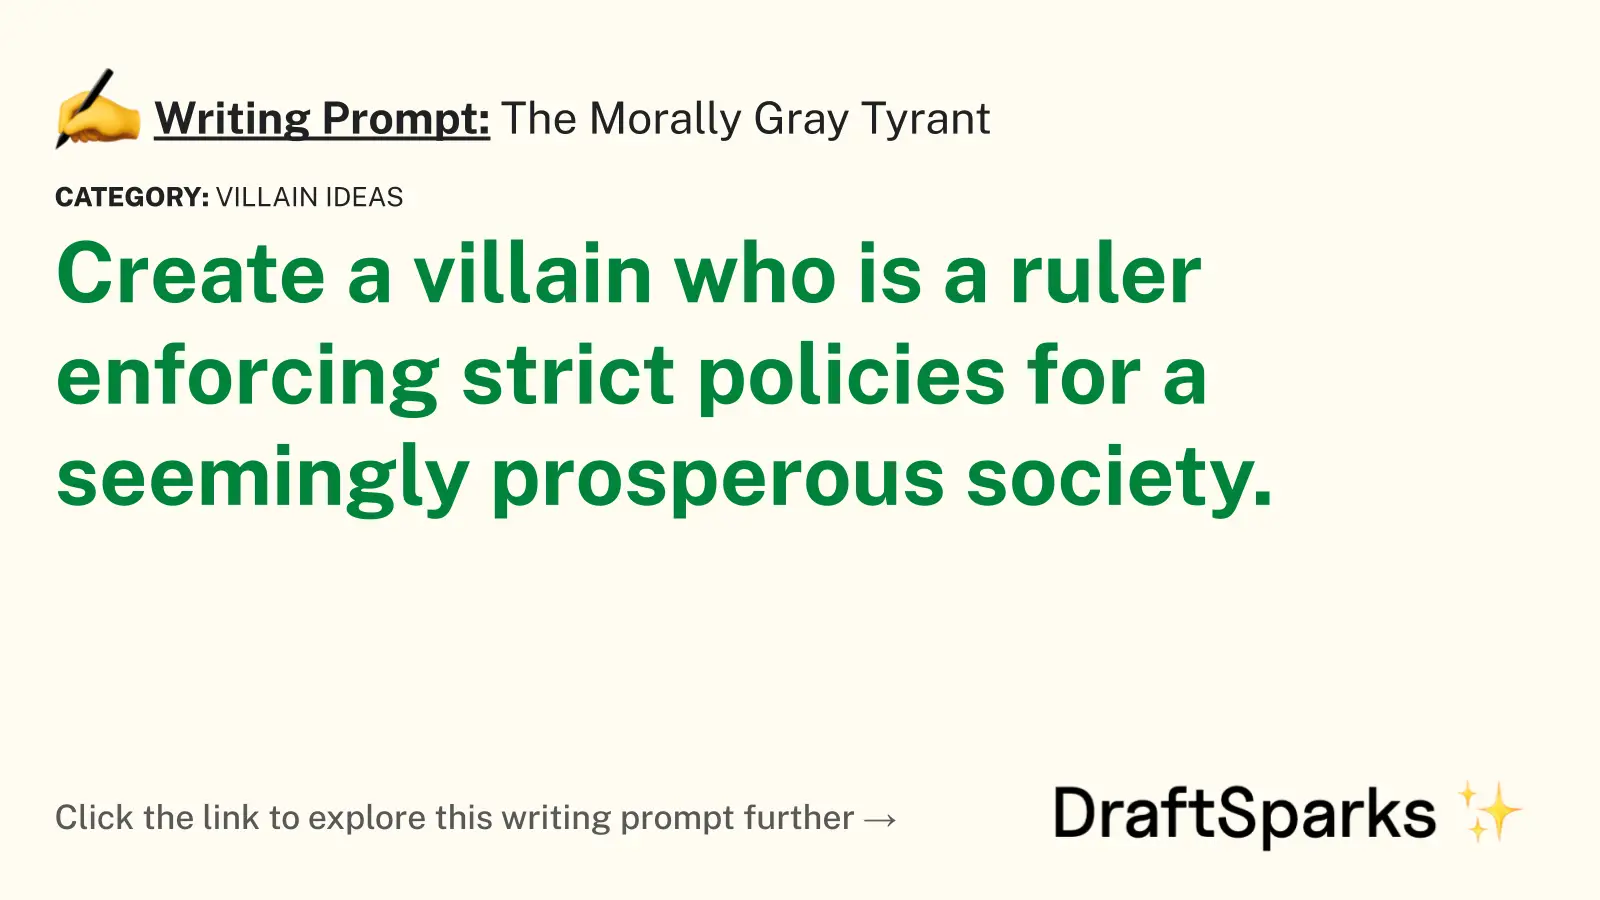 The Morally Gray Tyrant